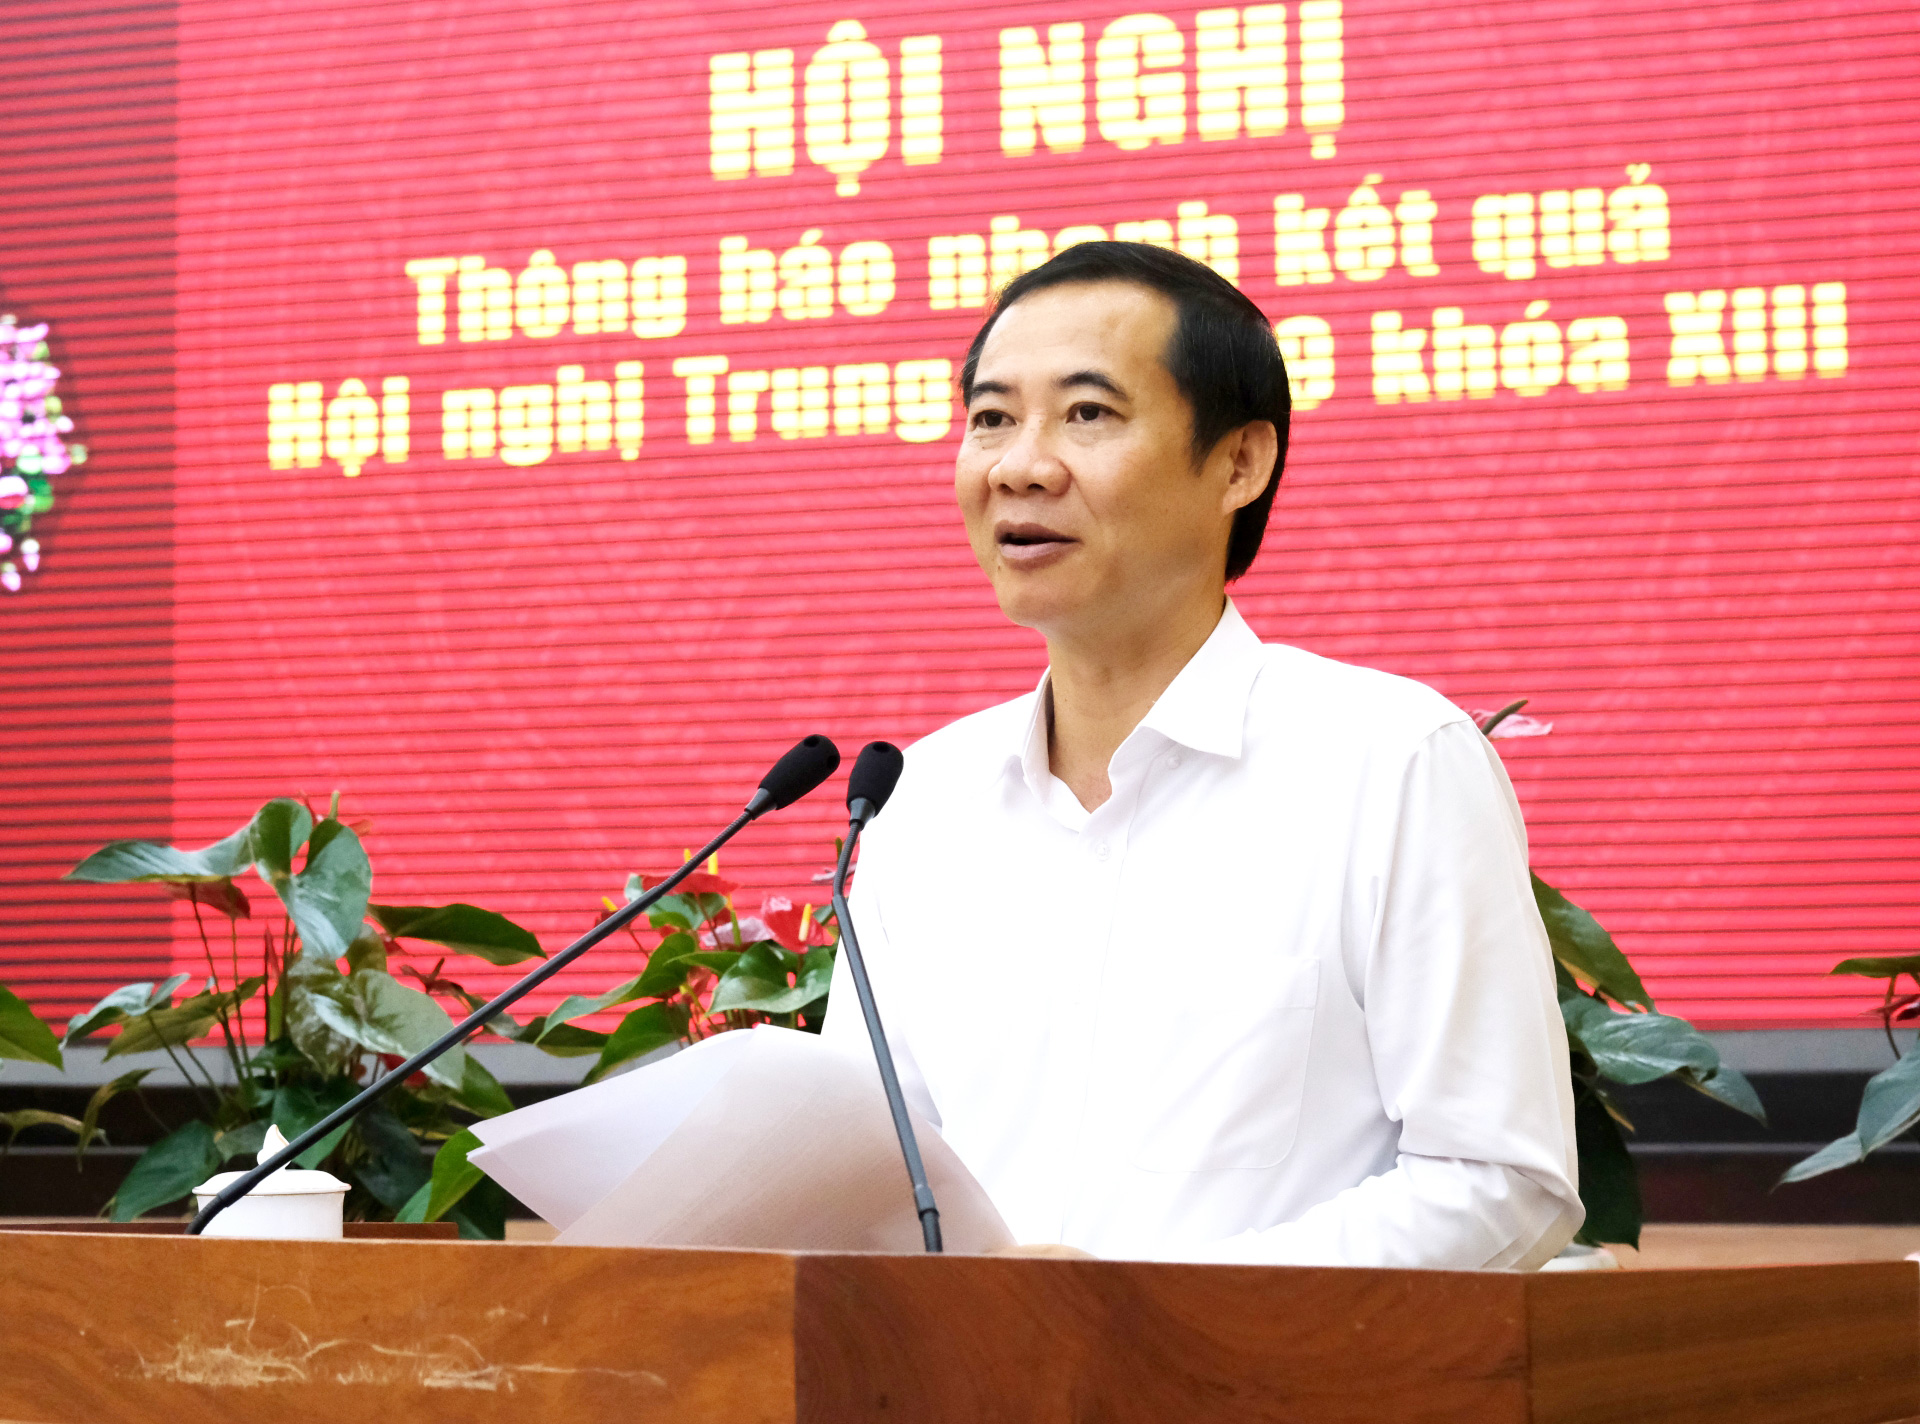 Đồng chí Nguyễn Thái Học - Quyền Bí thư Tỉnh ủy thông báo nhanh đến các đại biểu kết quả Hội nghị lần thứ 9, Ban Chấp hành Trung ương Đảng khoá XIII